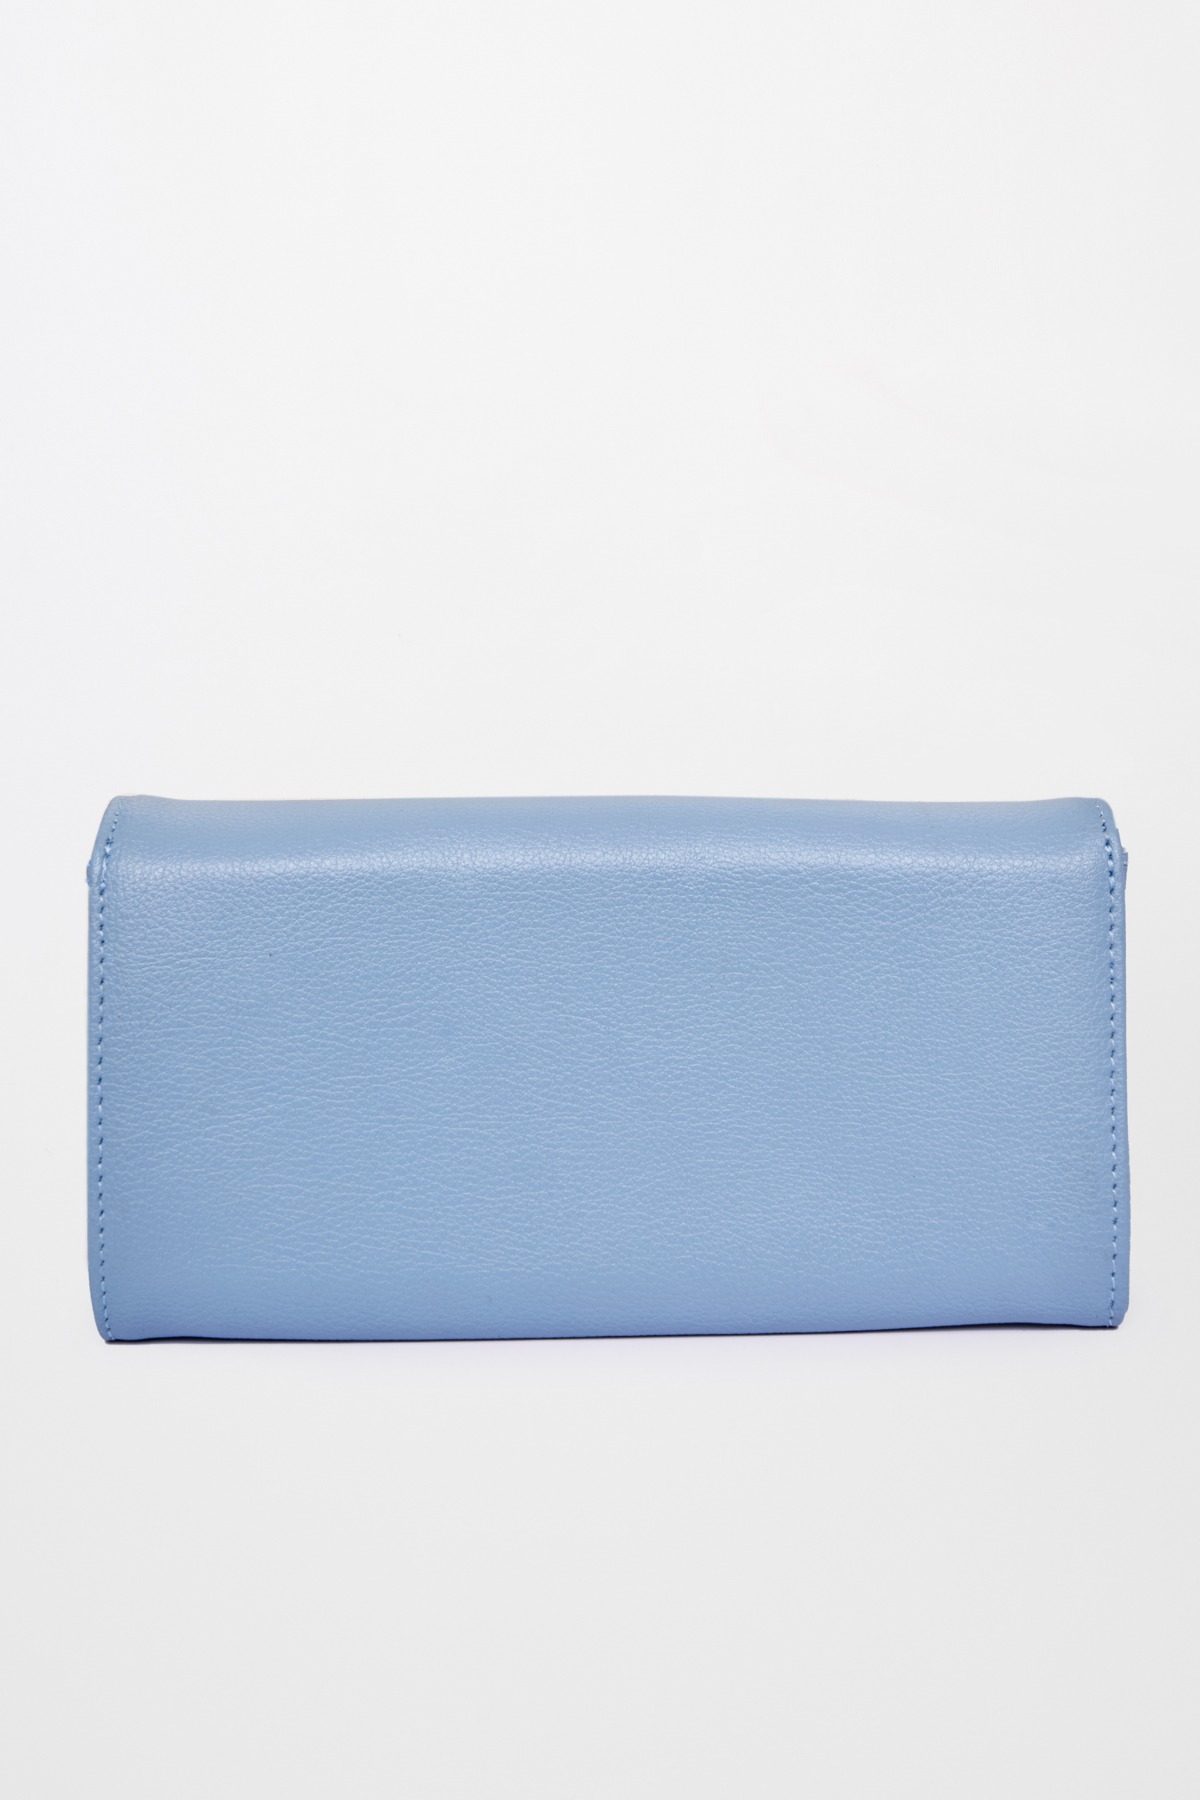 Blue Wallet Hand Bag, , image 2